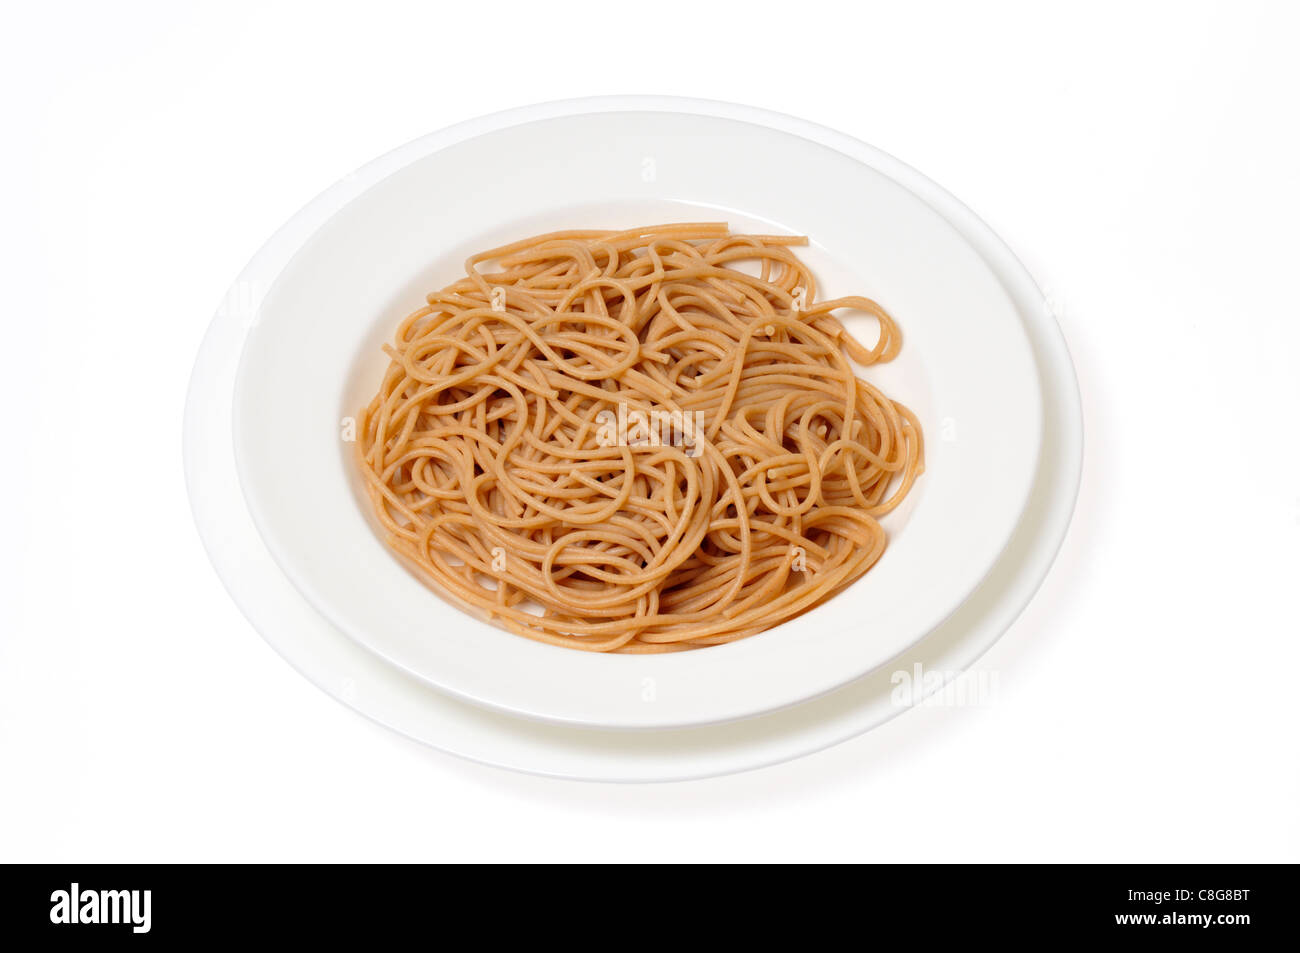 Schüssel mit Vollkorn spaghetti ohne Soße auf weißem Hintergrund, Ausschnitt Stockfoto